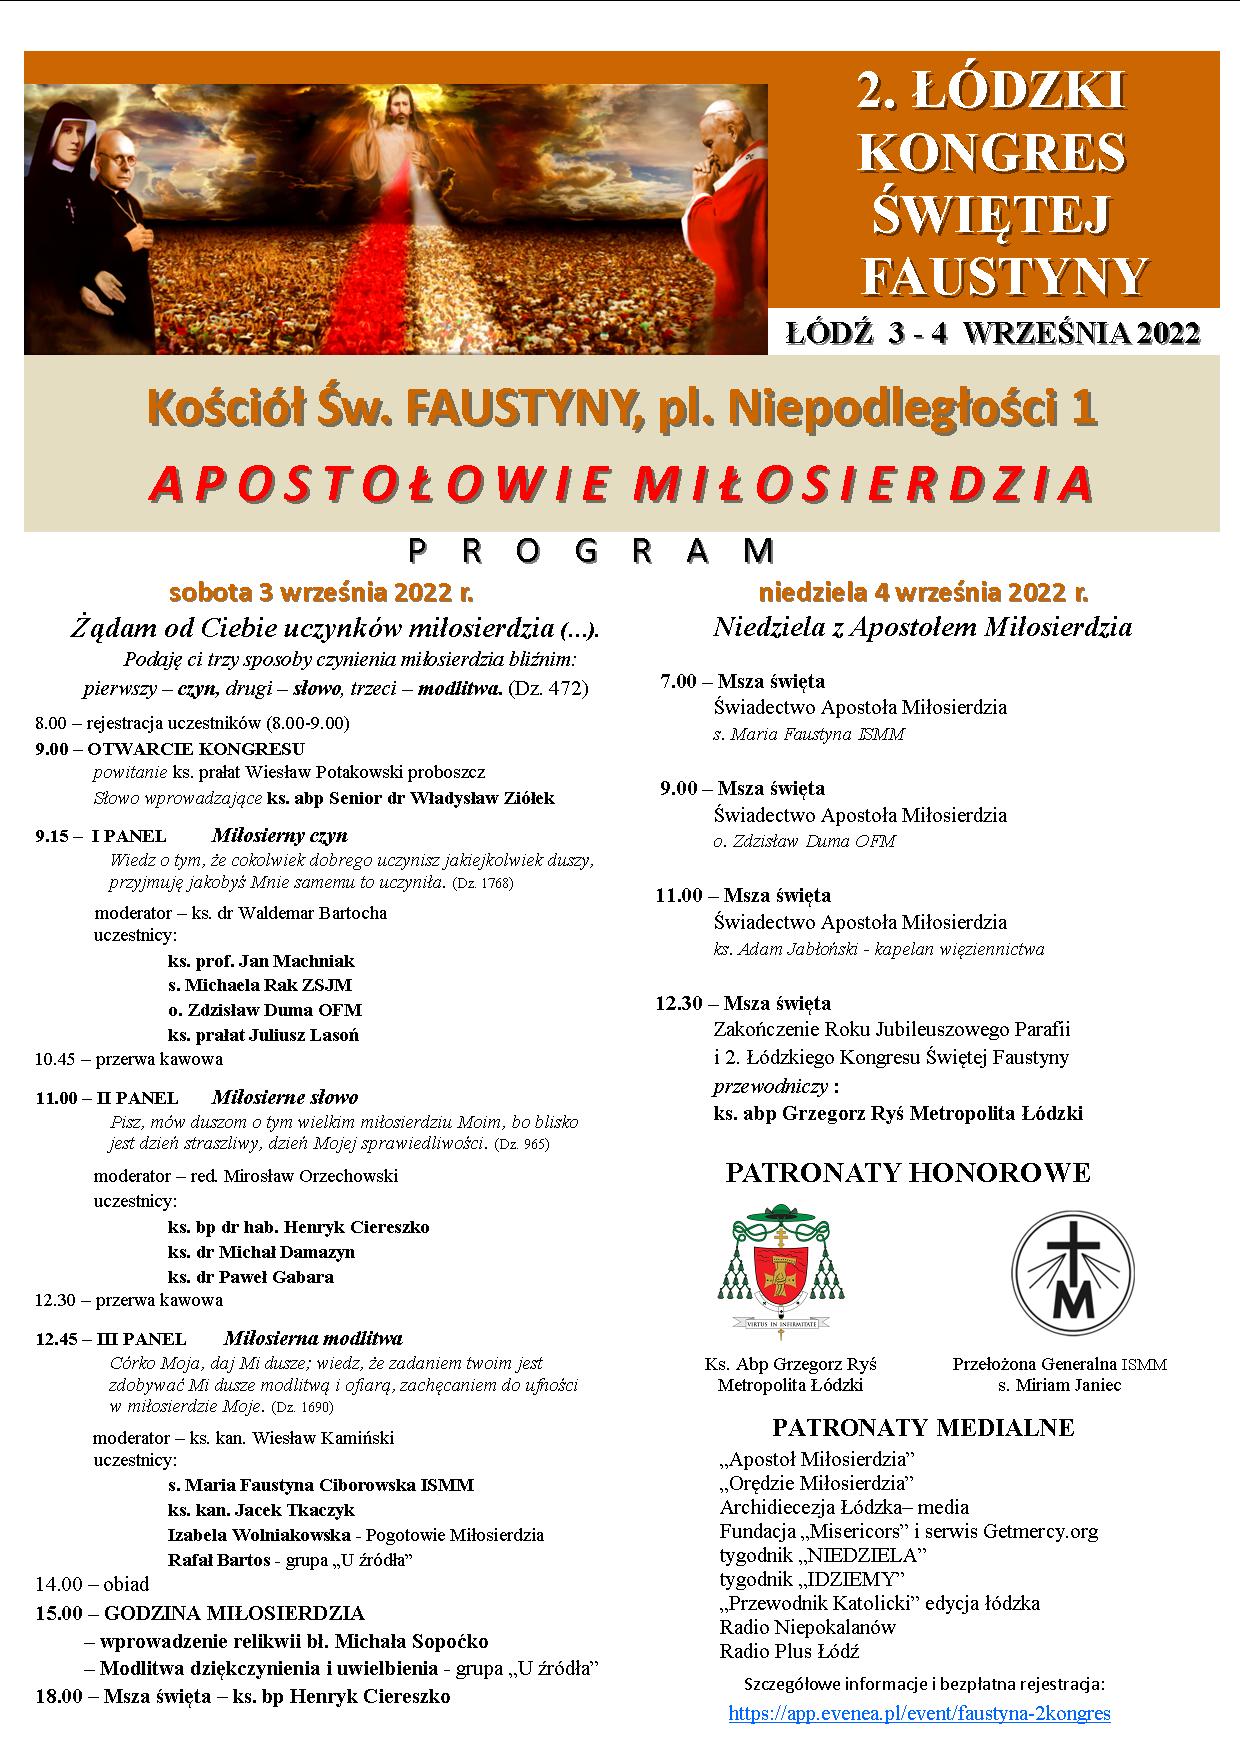  Program 2. Łódzkiego Kongres Świętej Faustyny